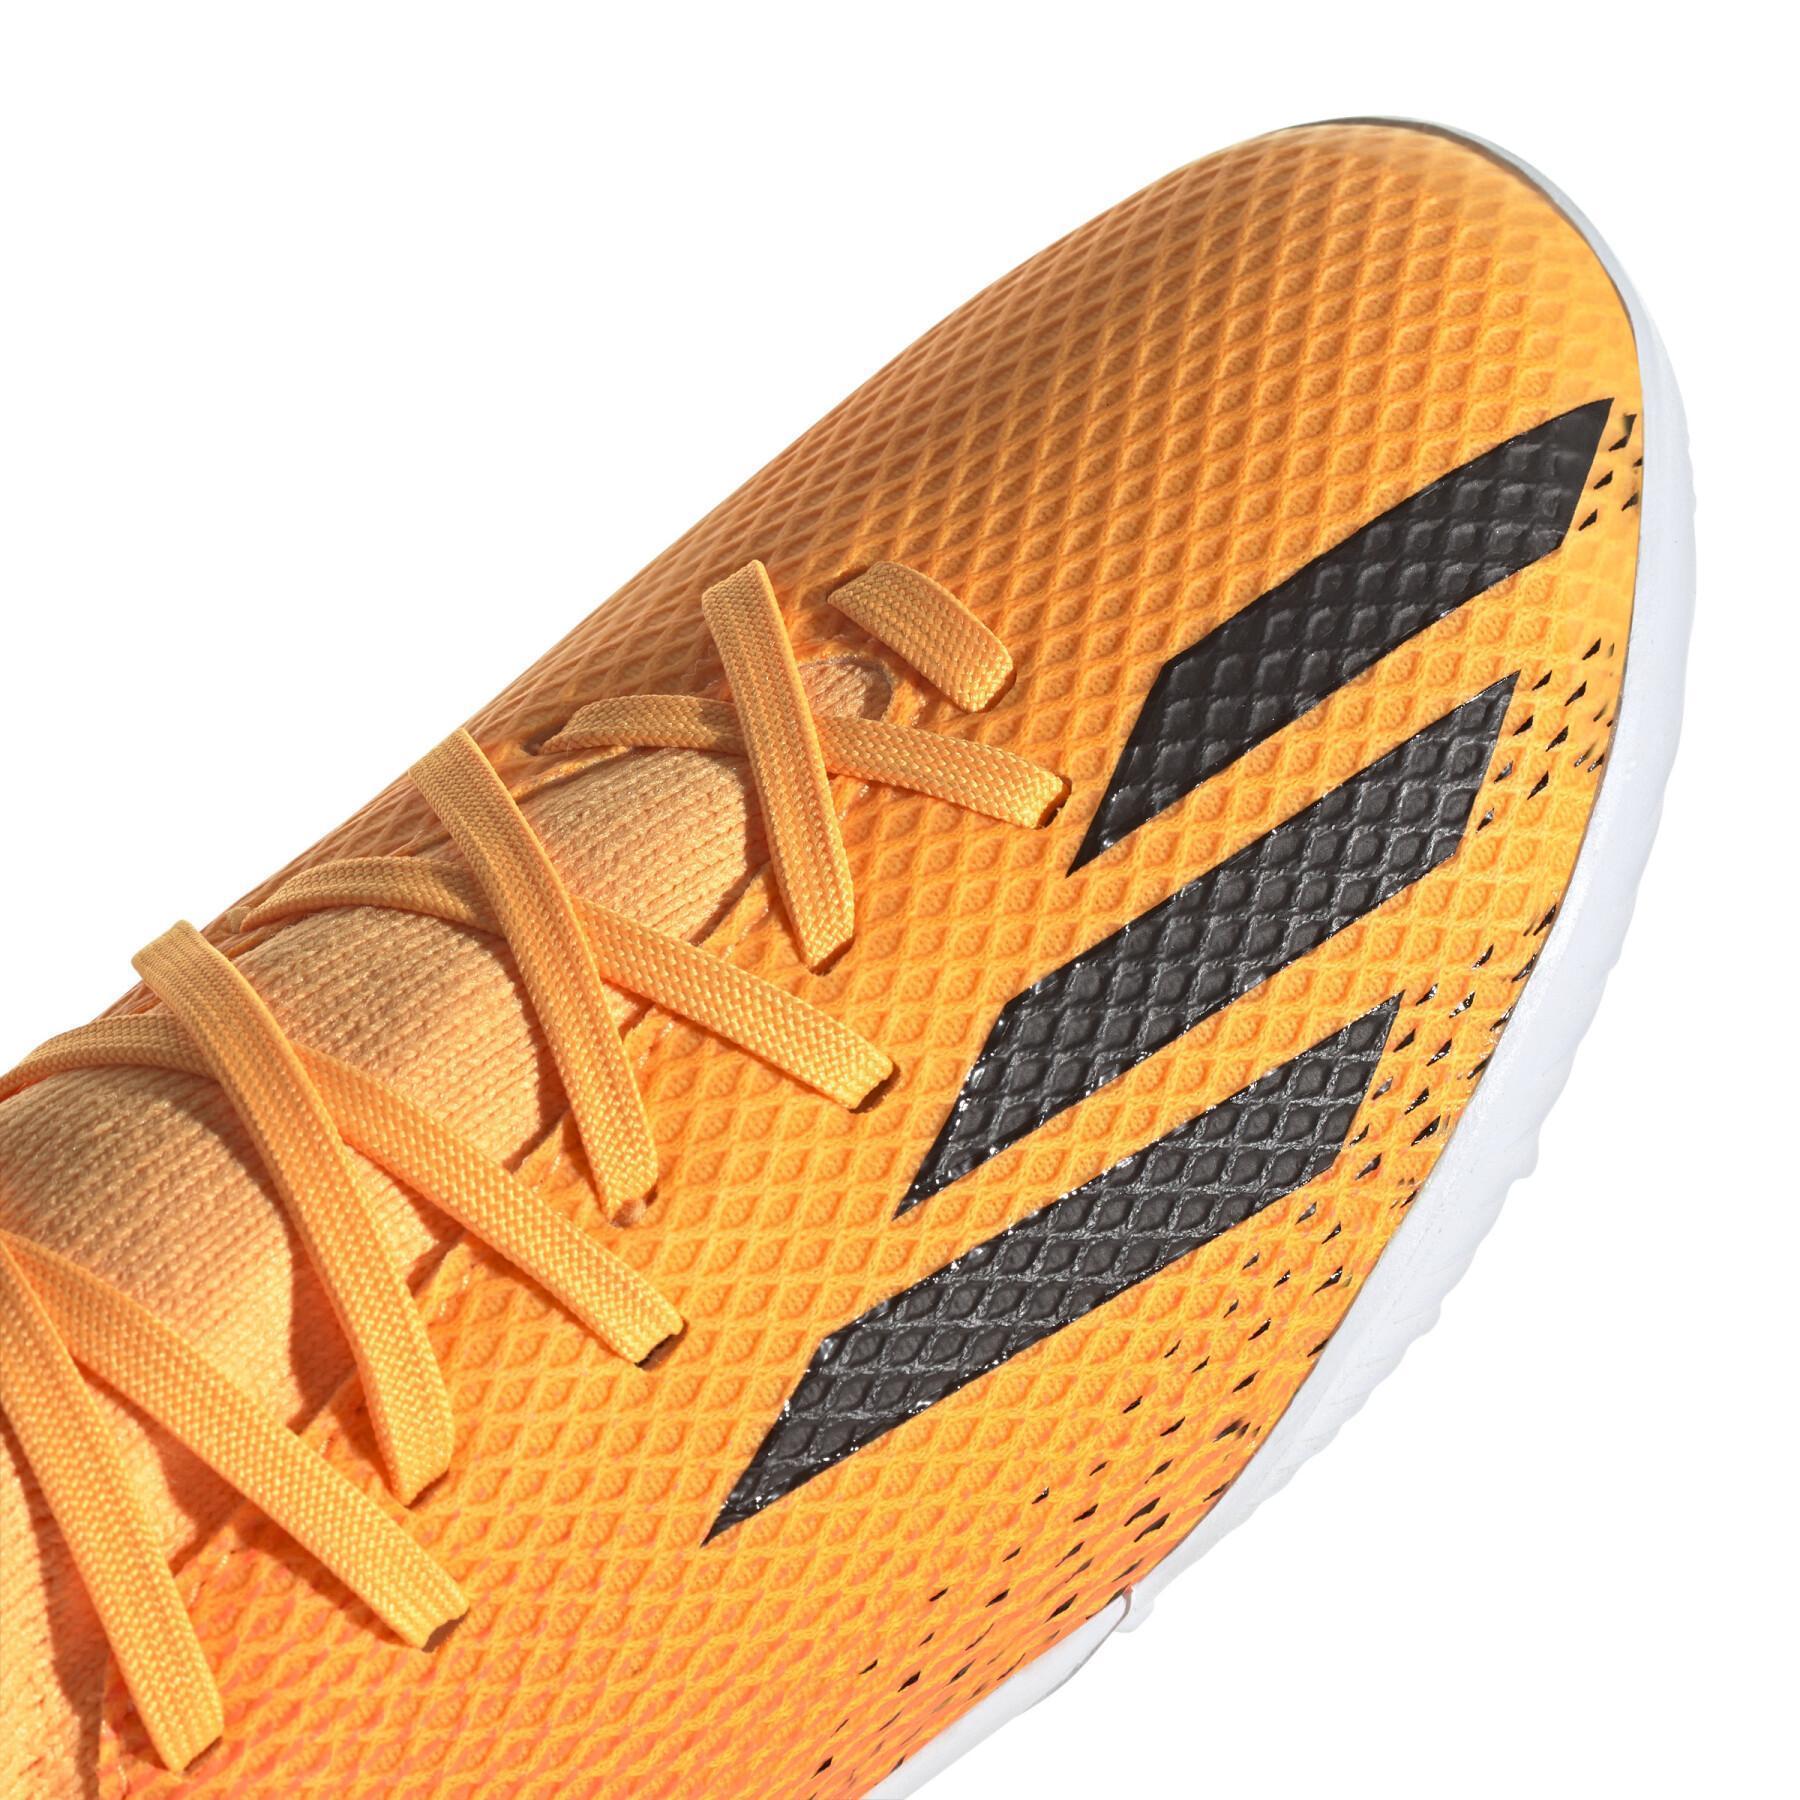 Fotbollsskor för barn adidas X Speedportal.3 Turf Heatspawn Pack